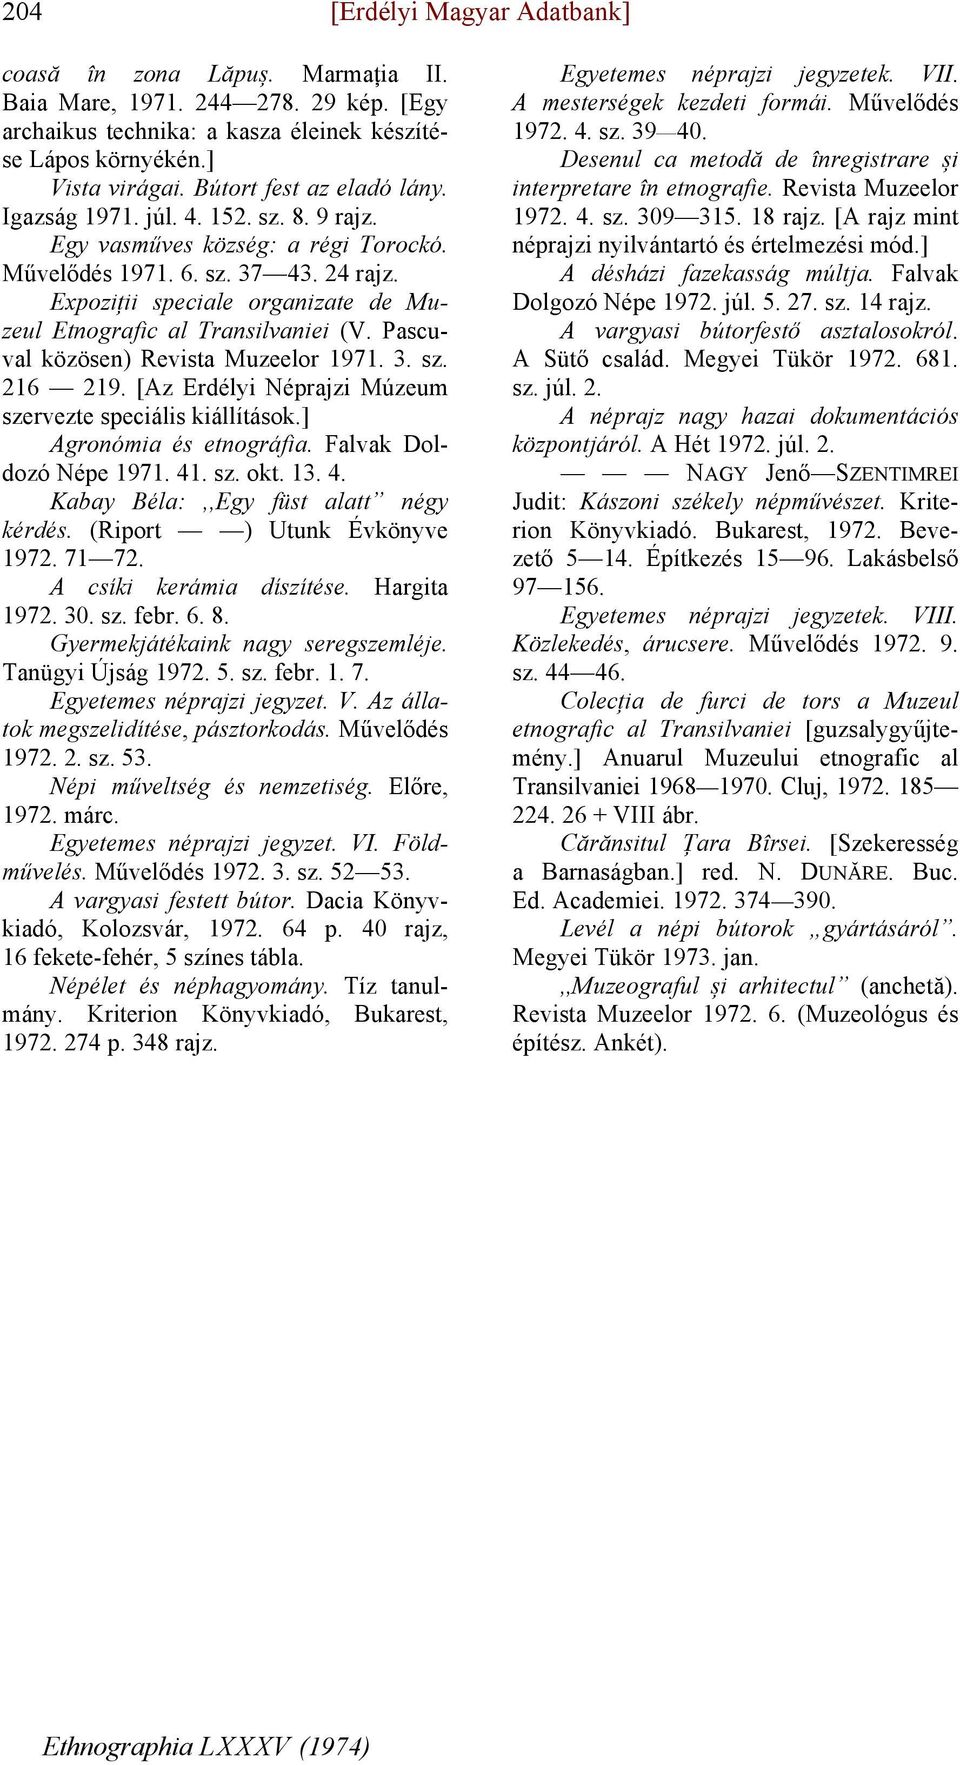 Pascuval közösen) Revista Muzeelor 1971. 3. sz. 216 219. [Az Erdélyi Néprajzi Múzeum szervezte speciális kiállítások.] Agronómia és etnográfia. Falvak Doldozó Népe 1971. 41